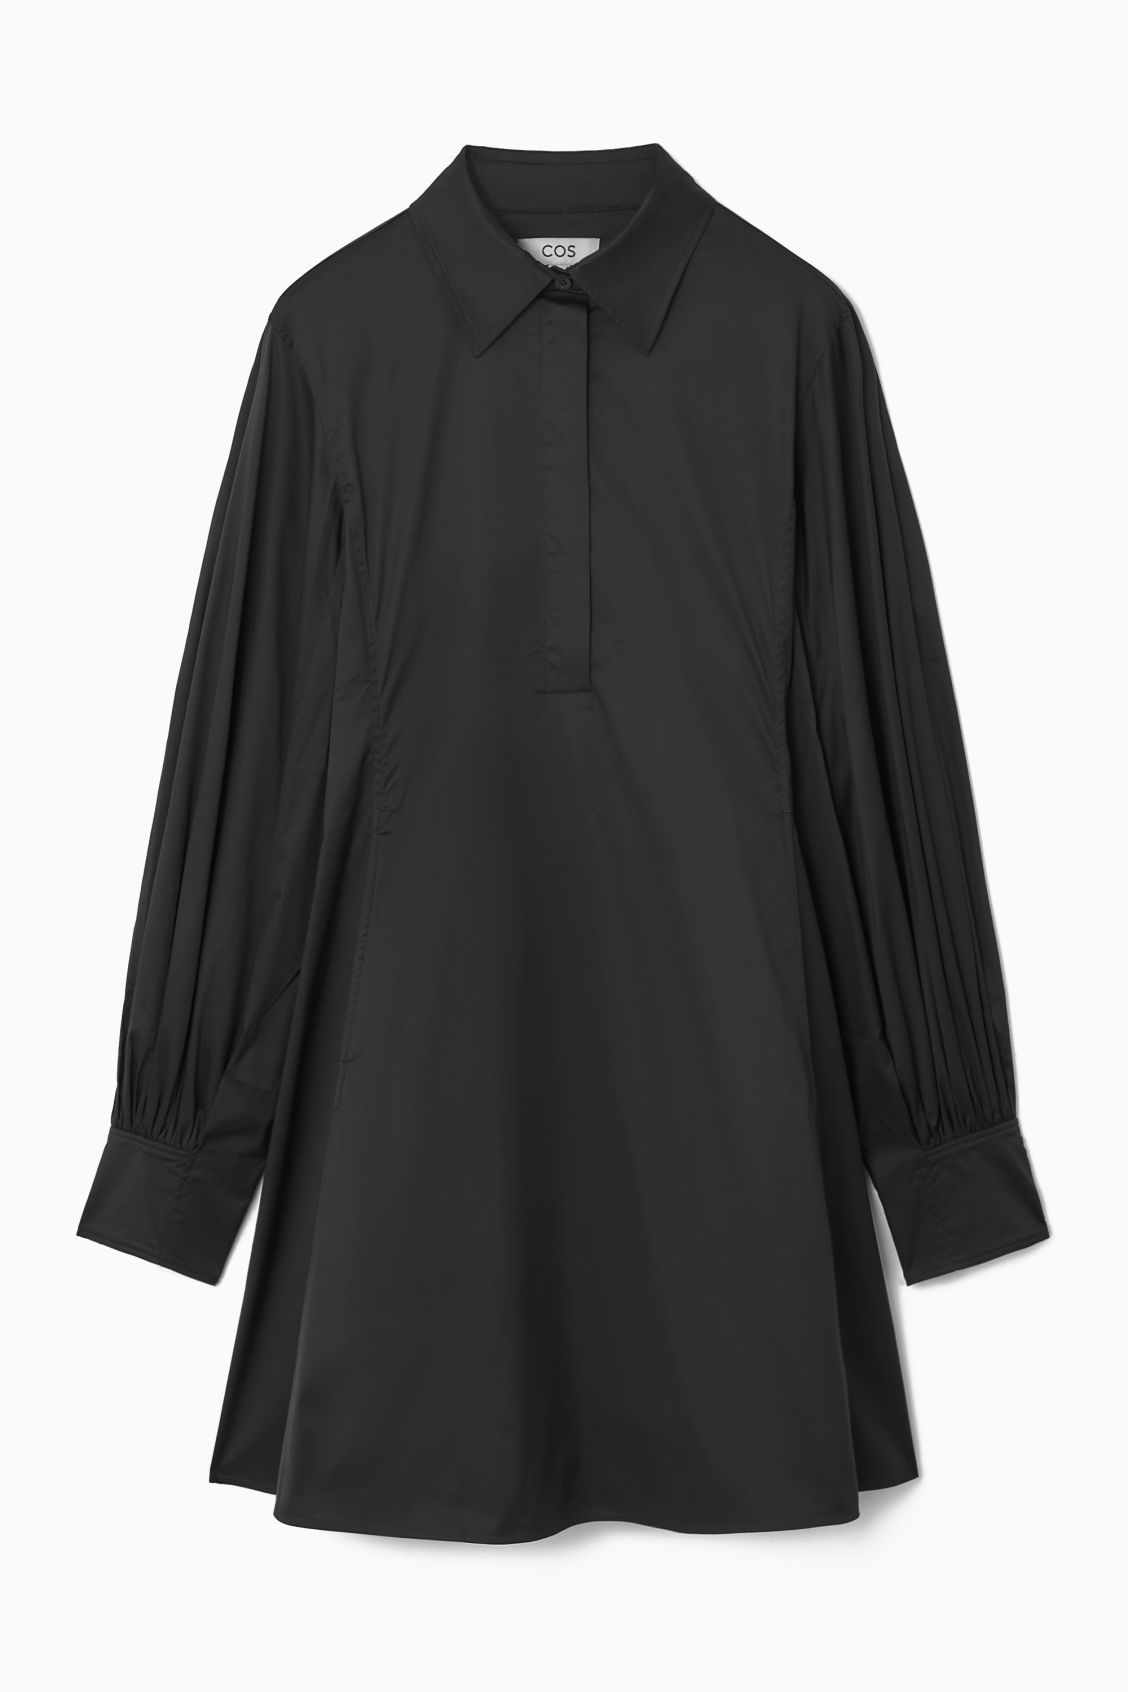 GATHERED-SLEEVE MINI SHIRT DRESS - BLACK - COS | COS UK